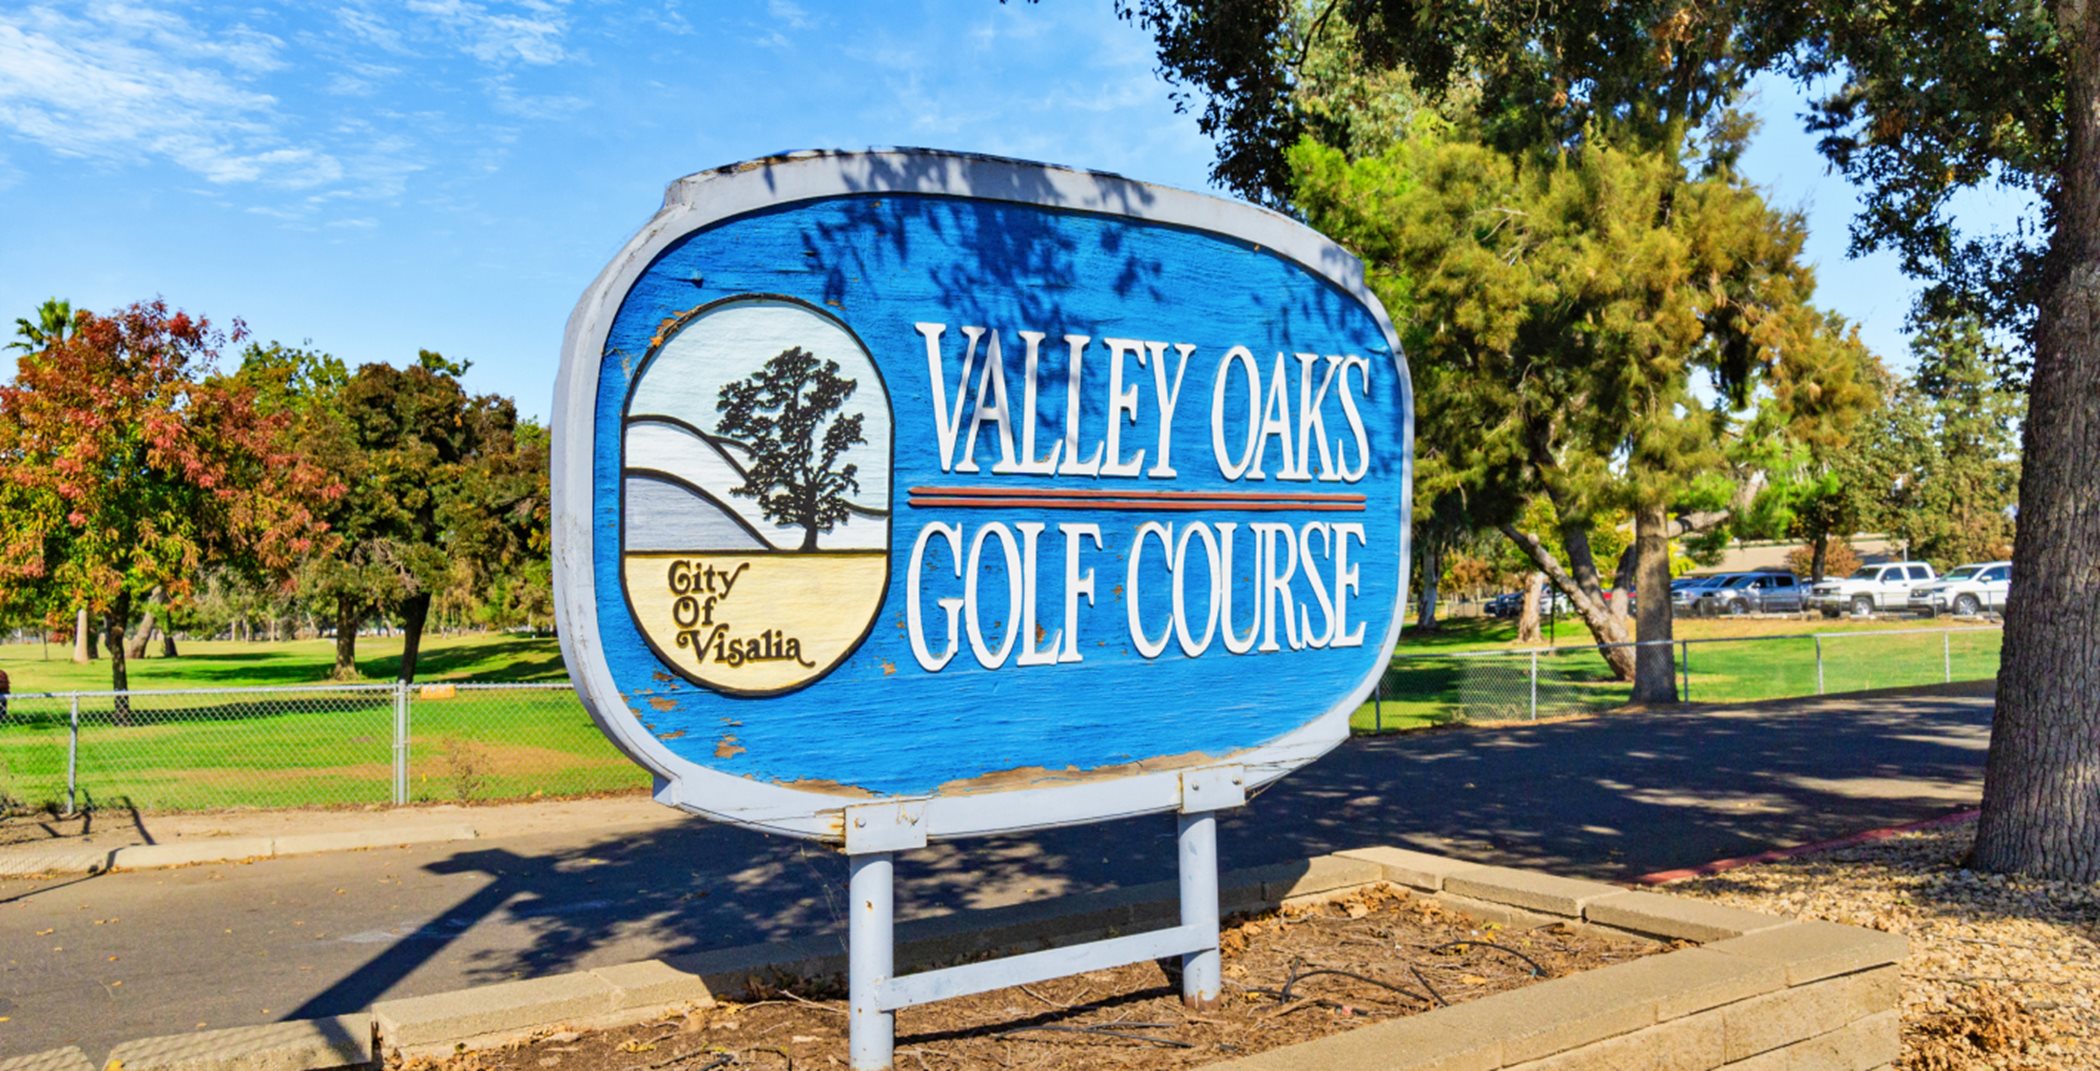 Valley Oaks Golf Course entrance sign